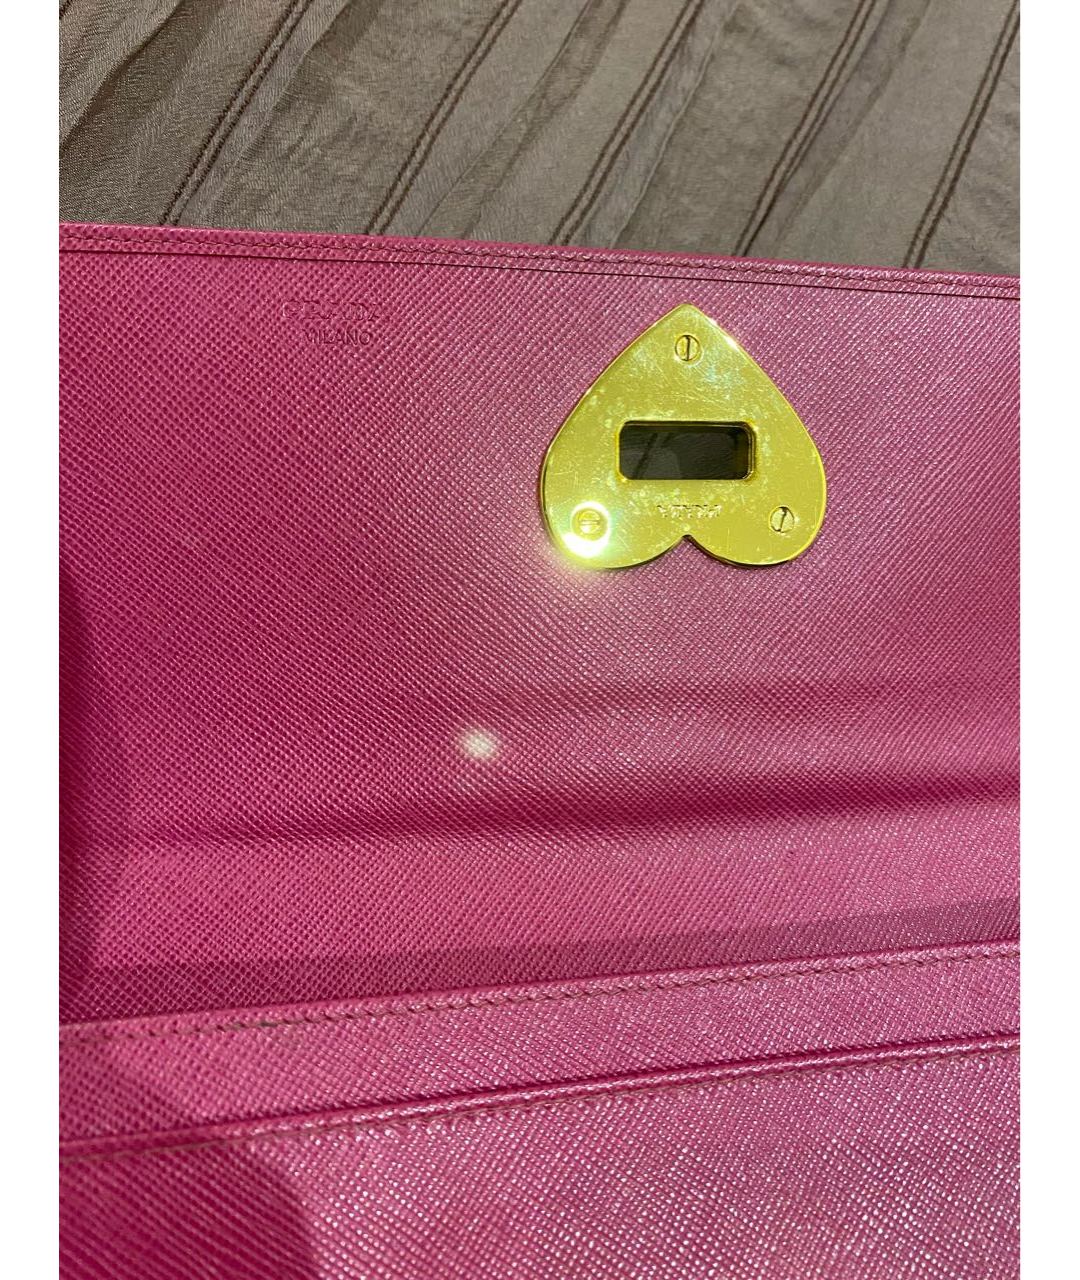 PRADA Розовый кожаный кошелек, фото 3